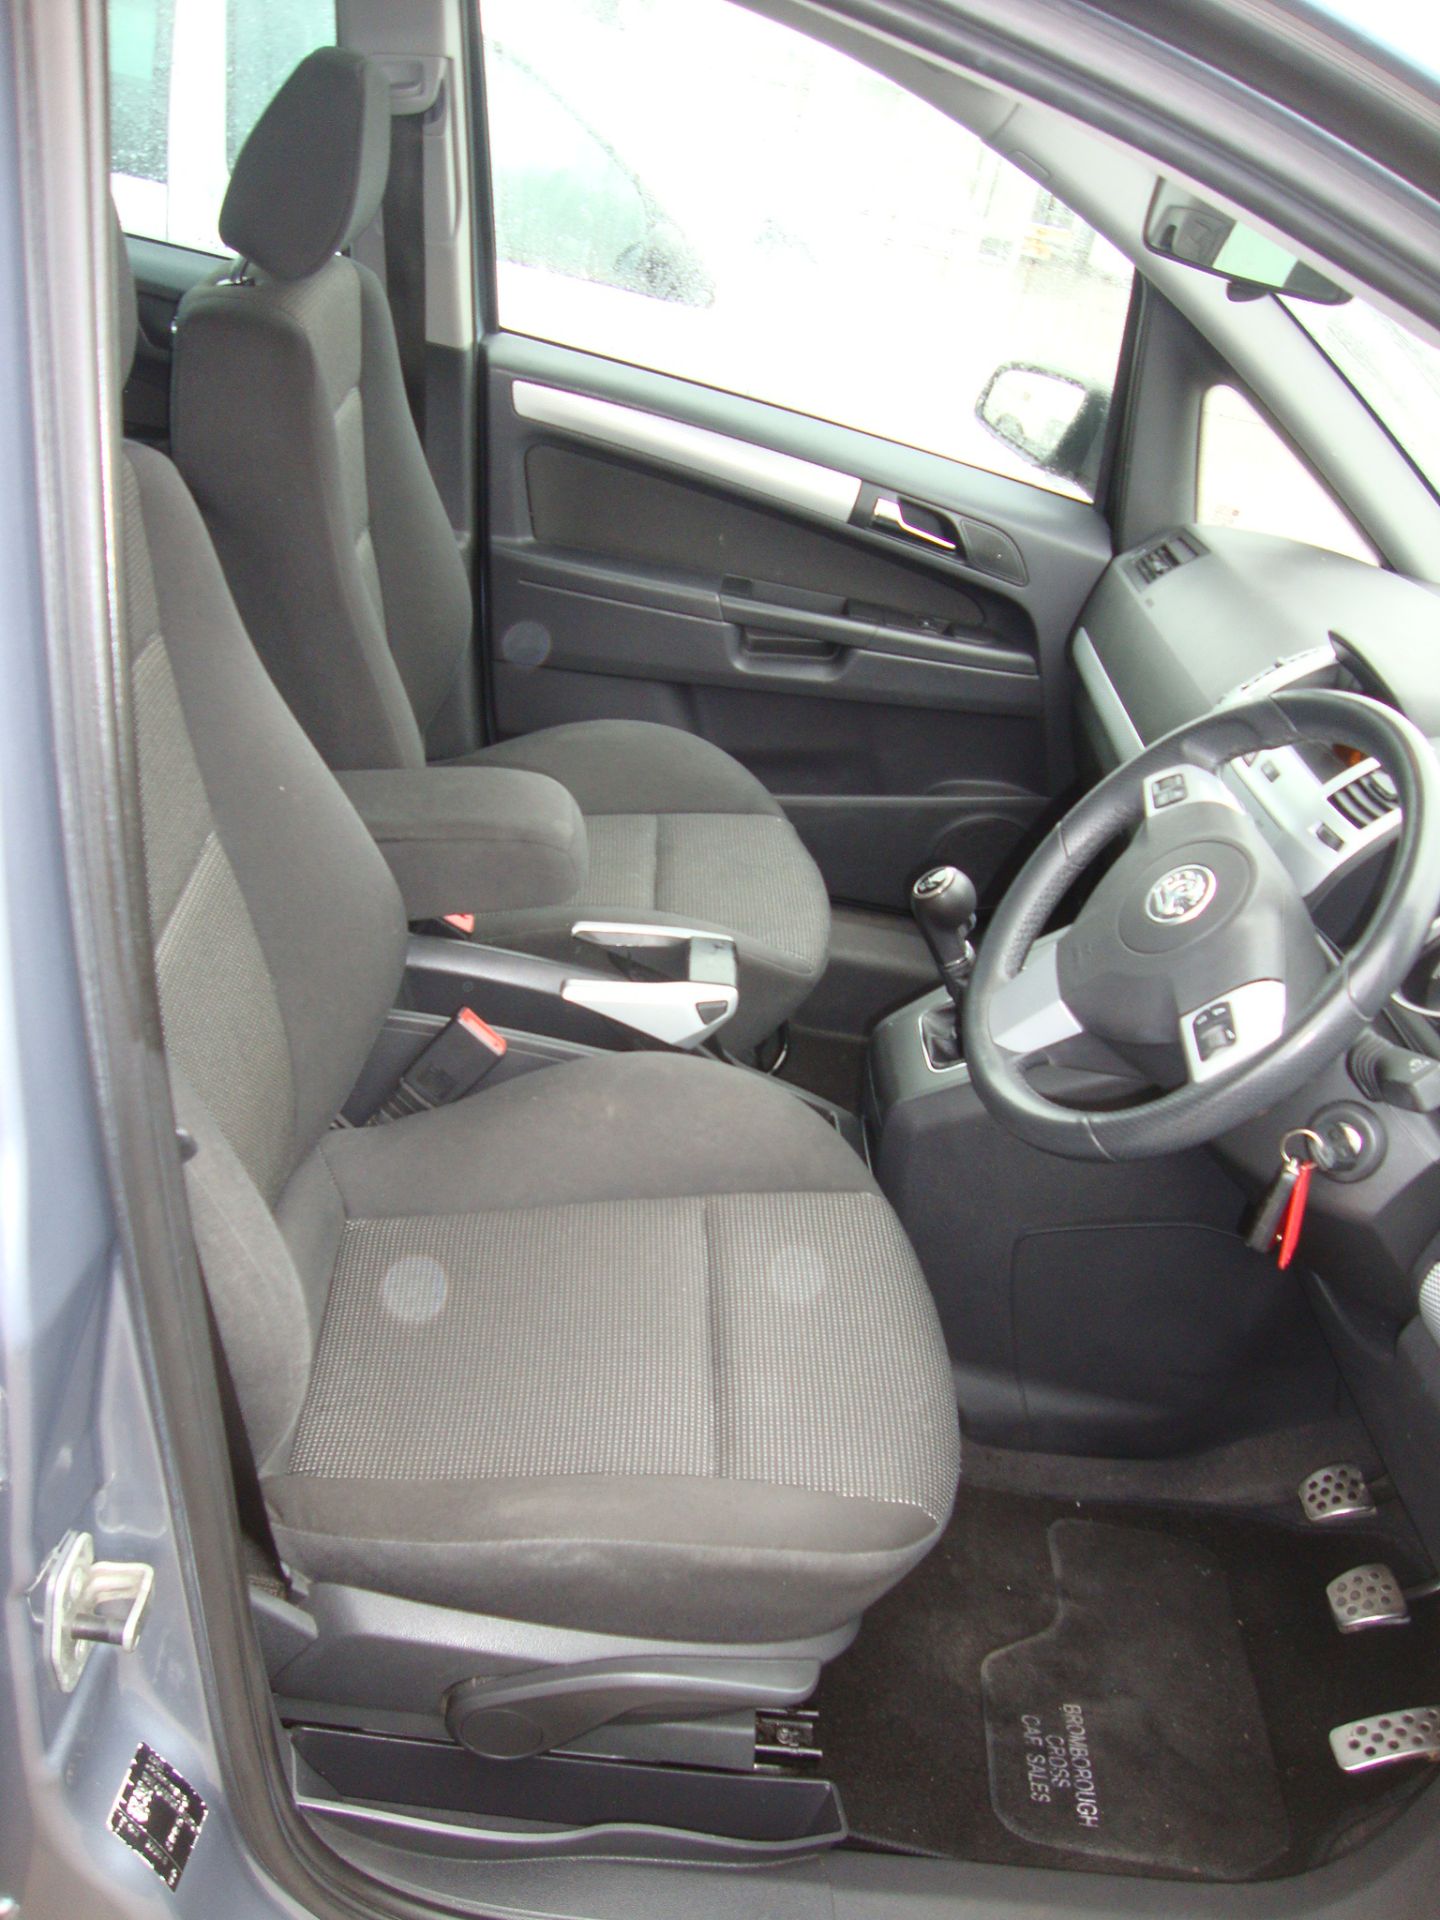 KG56 CJO Vauxhall Zafira SRI XP 140 7-seat MPV - Image 8 of 14